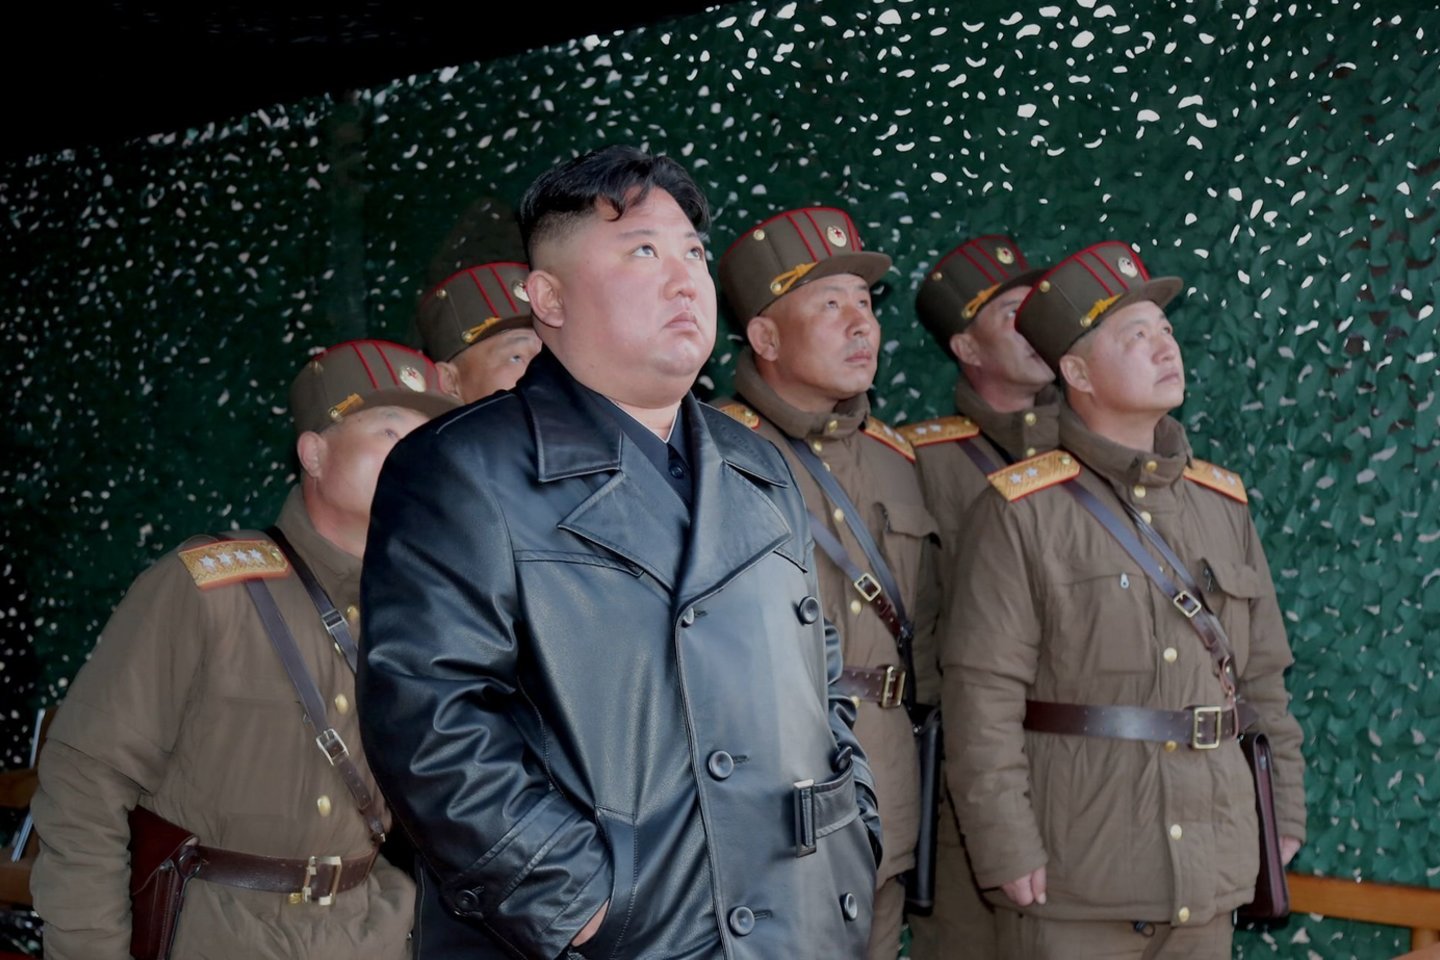 Sklandant įvairiems gandams apie Šiaurės Korėjos lyderio sveikatą, Kim Jong Unui greičiausiai priklausantis traukinys buvo pastebėtas pajūrio kurorte rytinėje šalies dalyje, parodė autoritetingos JAV svetainės „38 North“ palydovinės nuotraukos.<br>AFP/Scanpix nuotr.